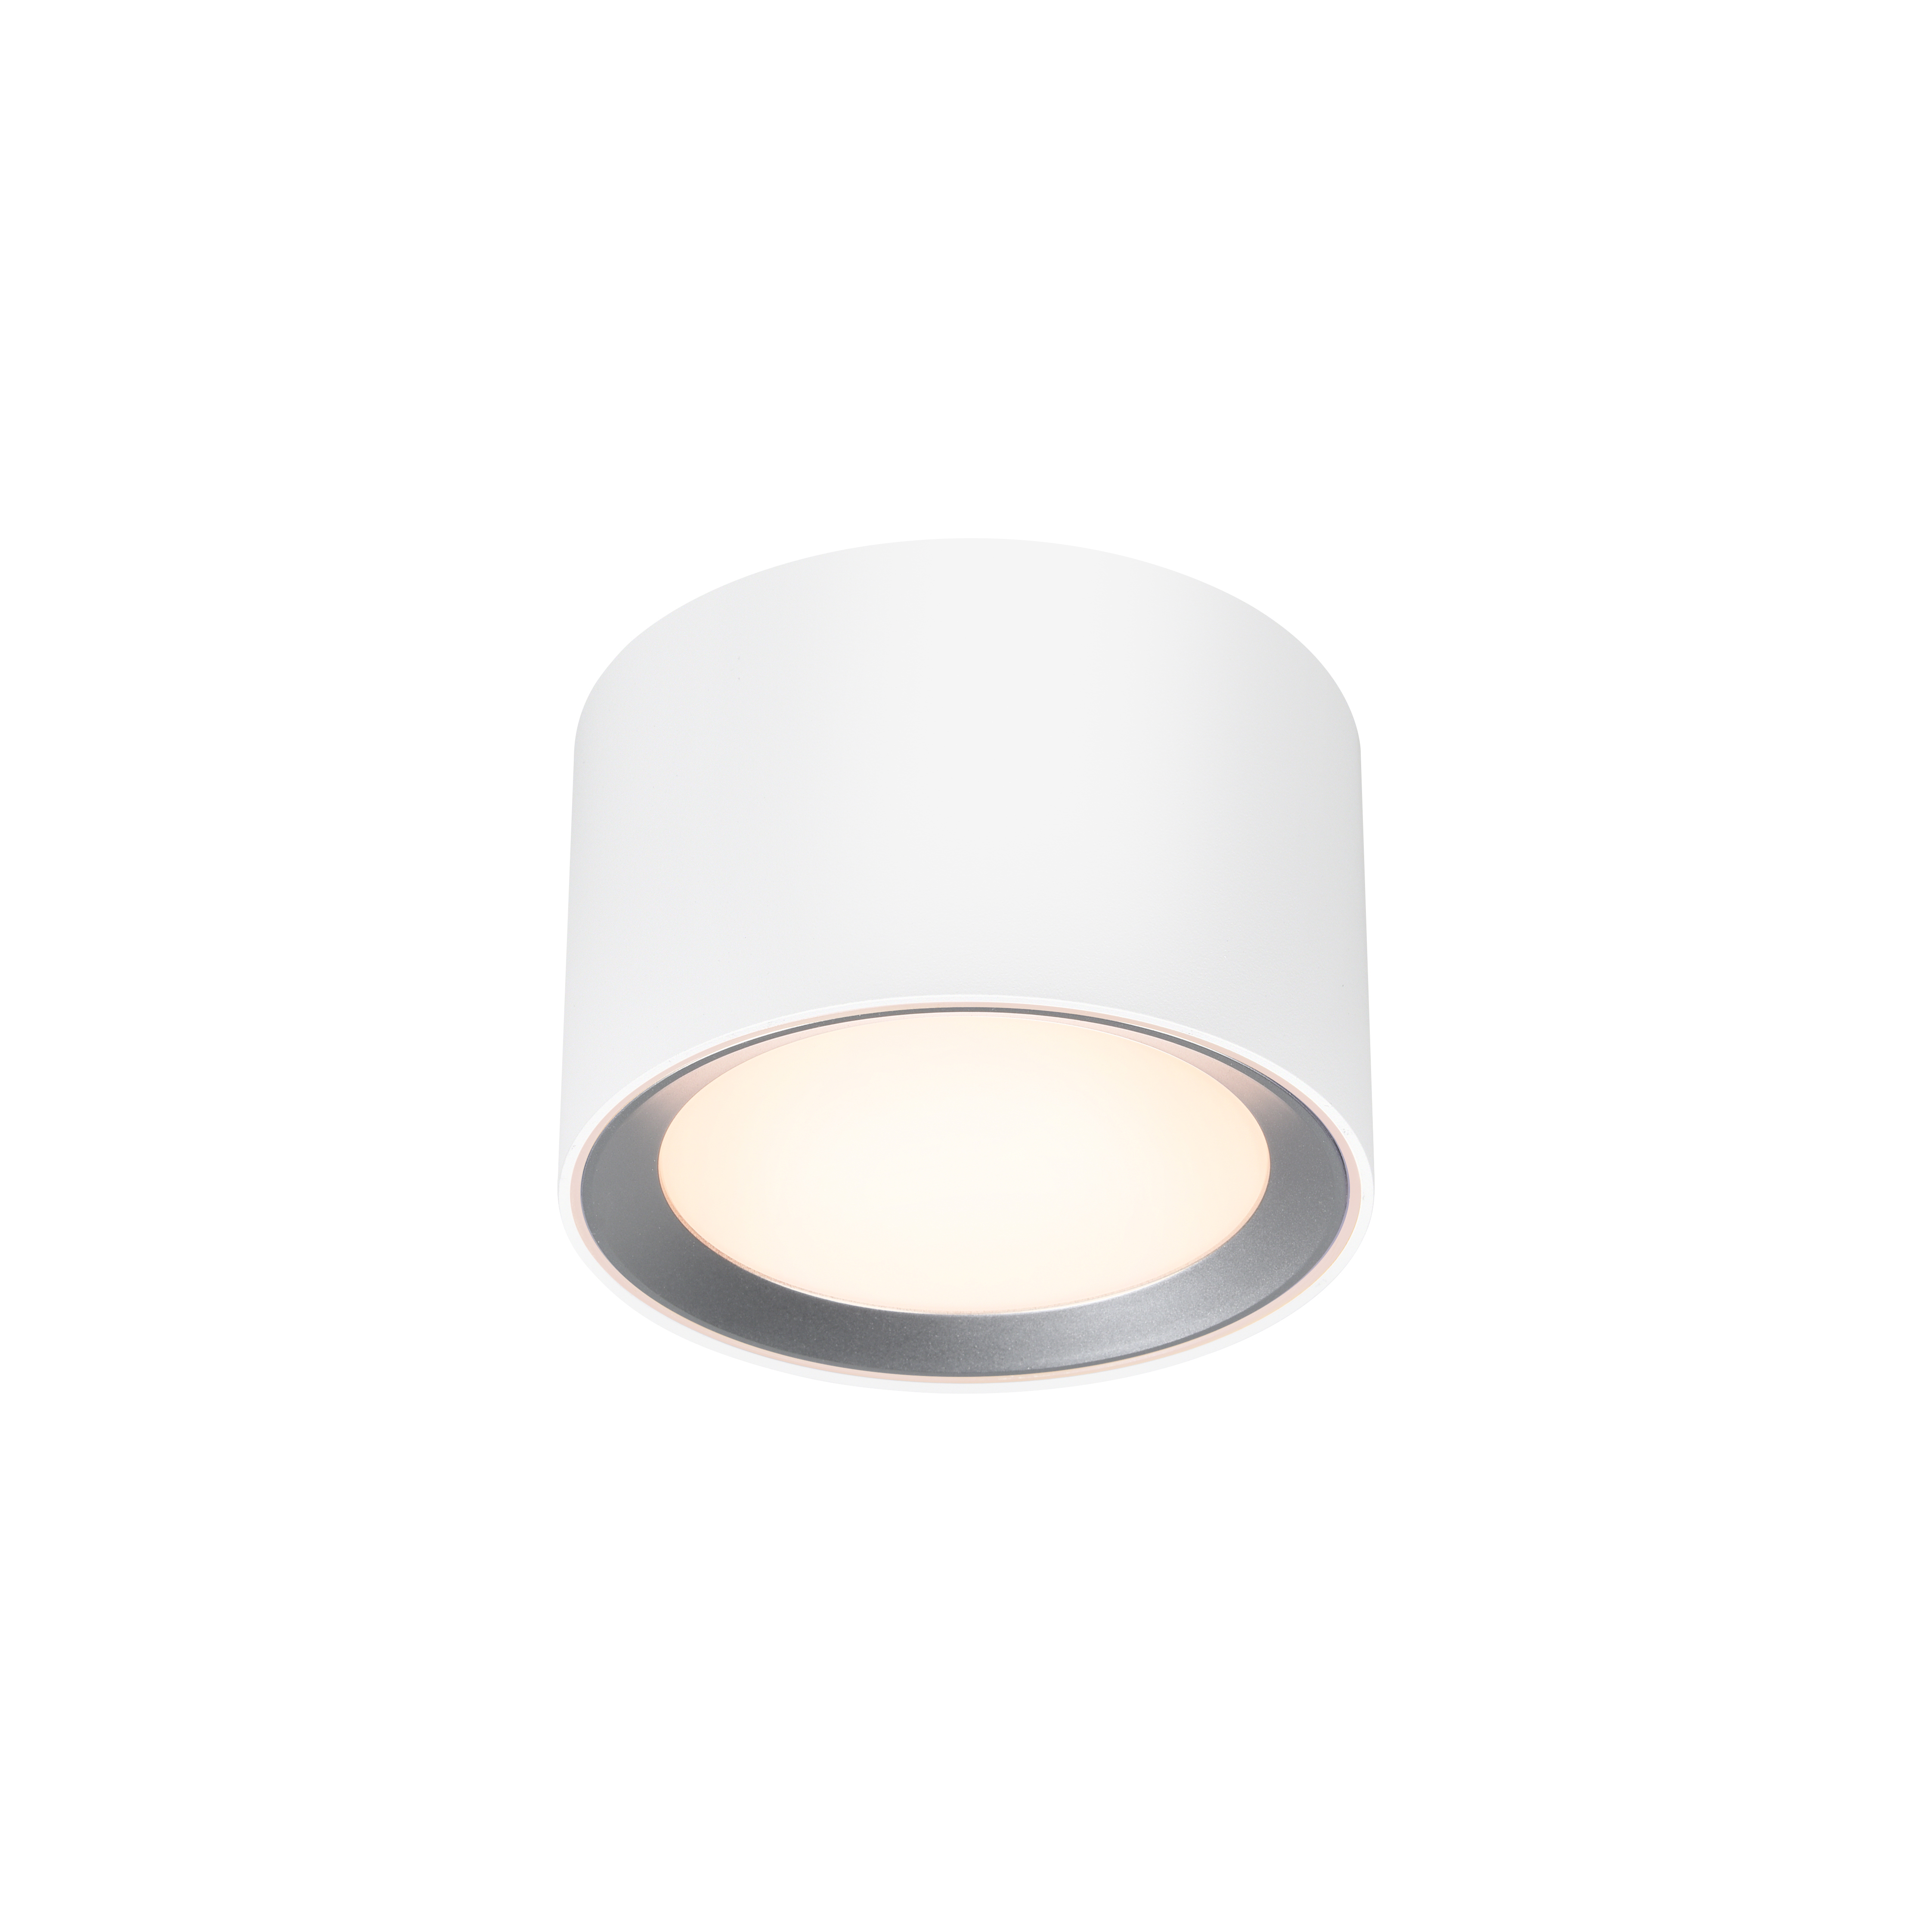 Landon Smart | Ceiling light | White | Deckenlampen